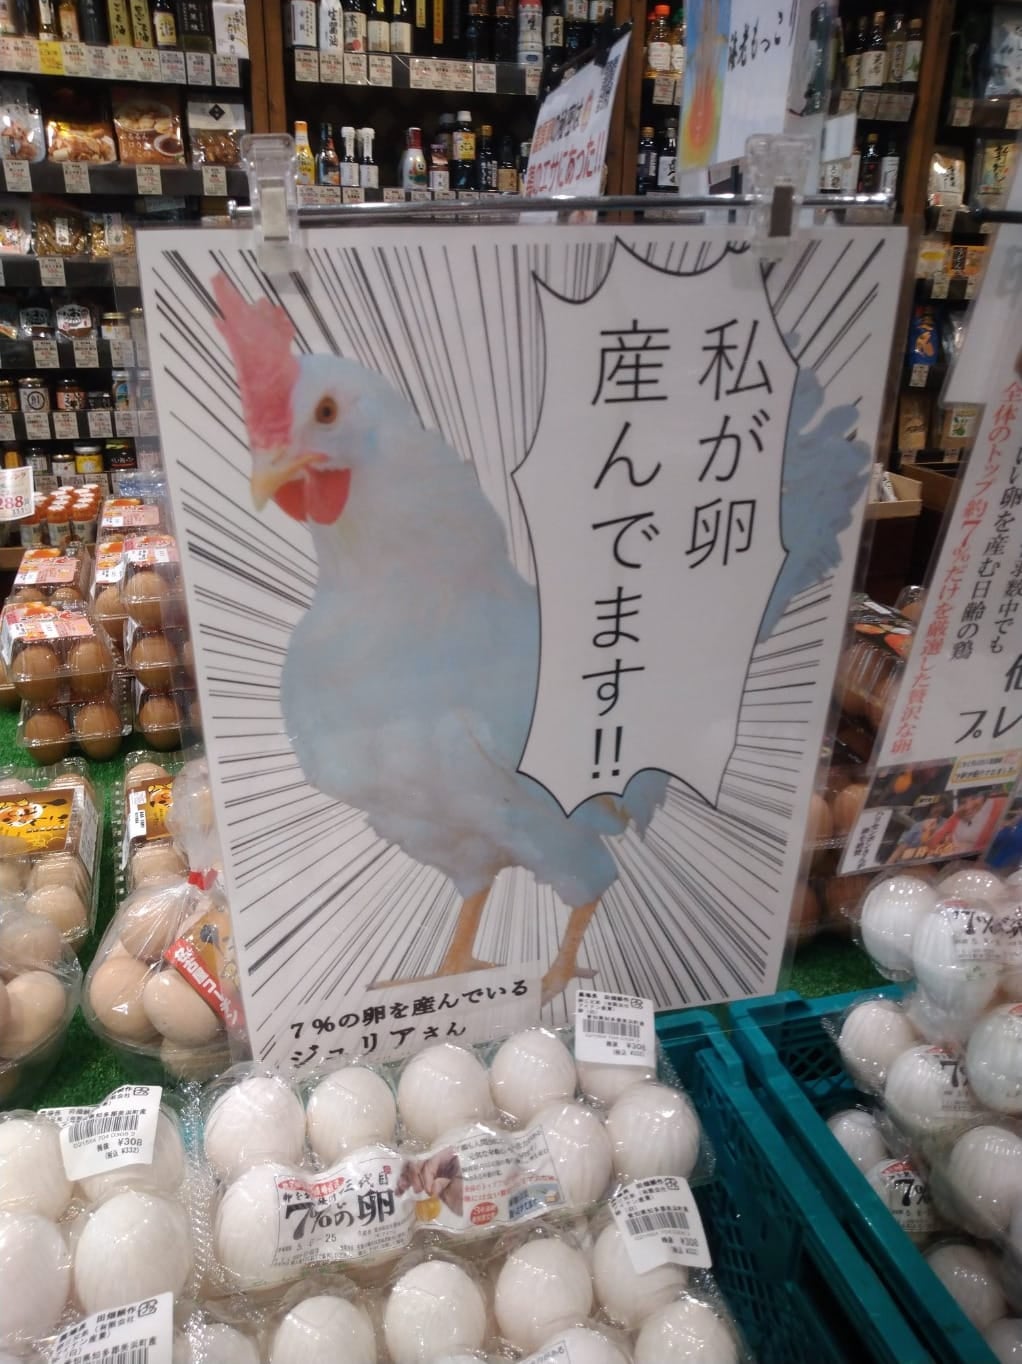 เจ้าของฟาร์มญี่ปุ่นแปะภาพแม่ไก่หน้าแผงขายไข่